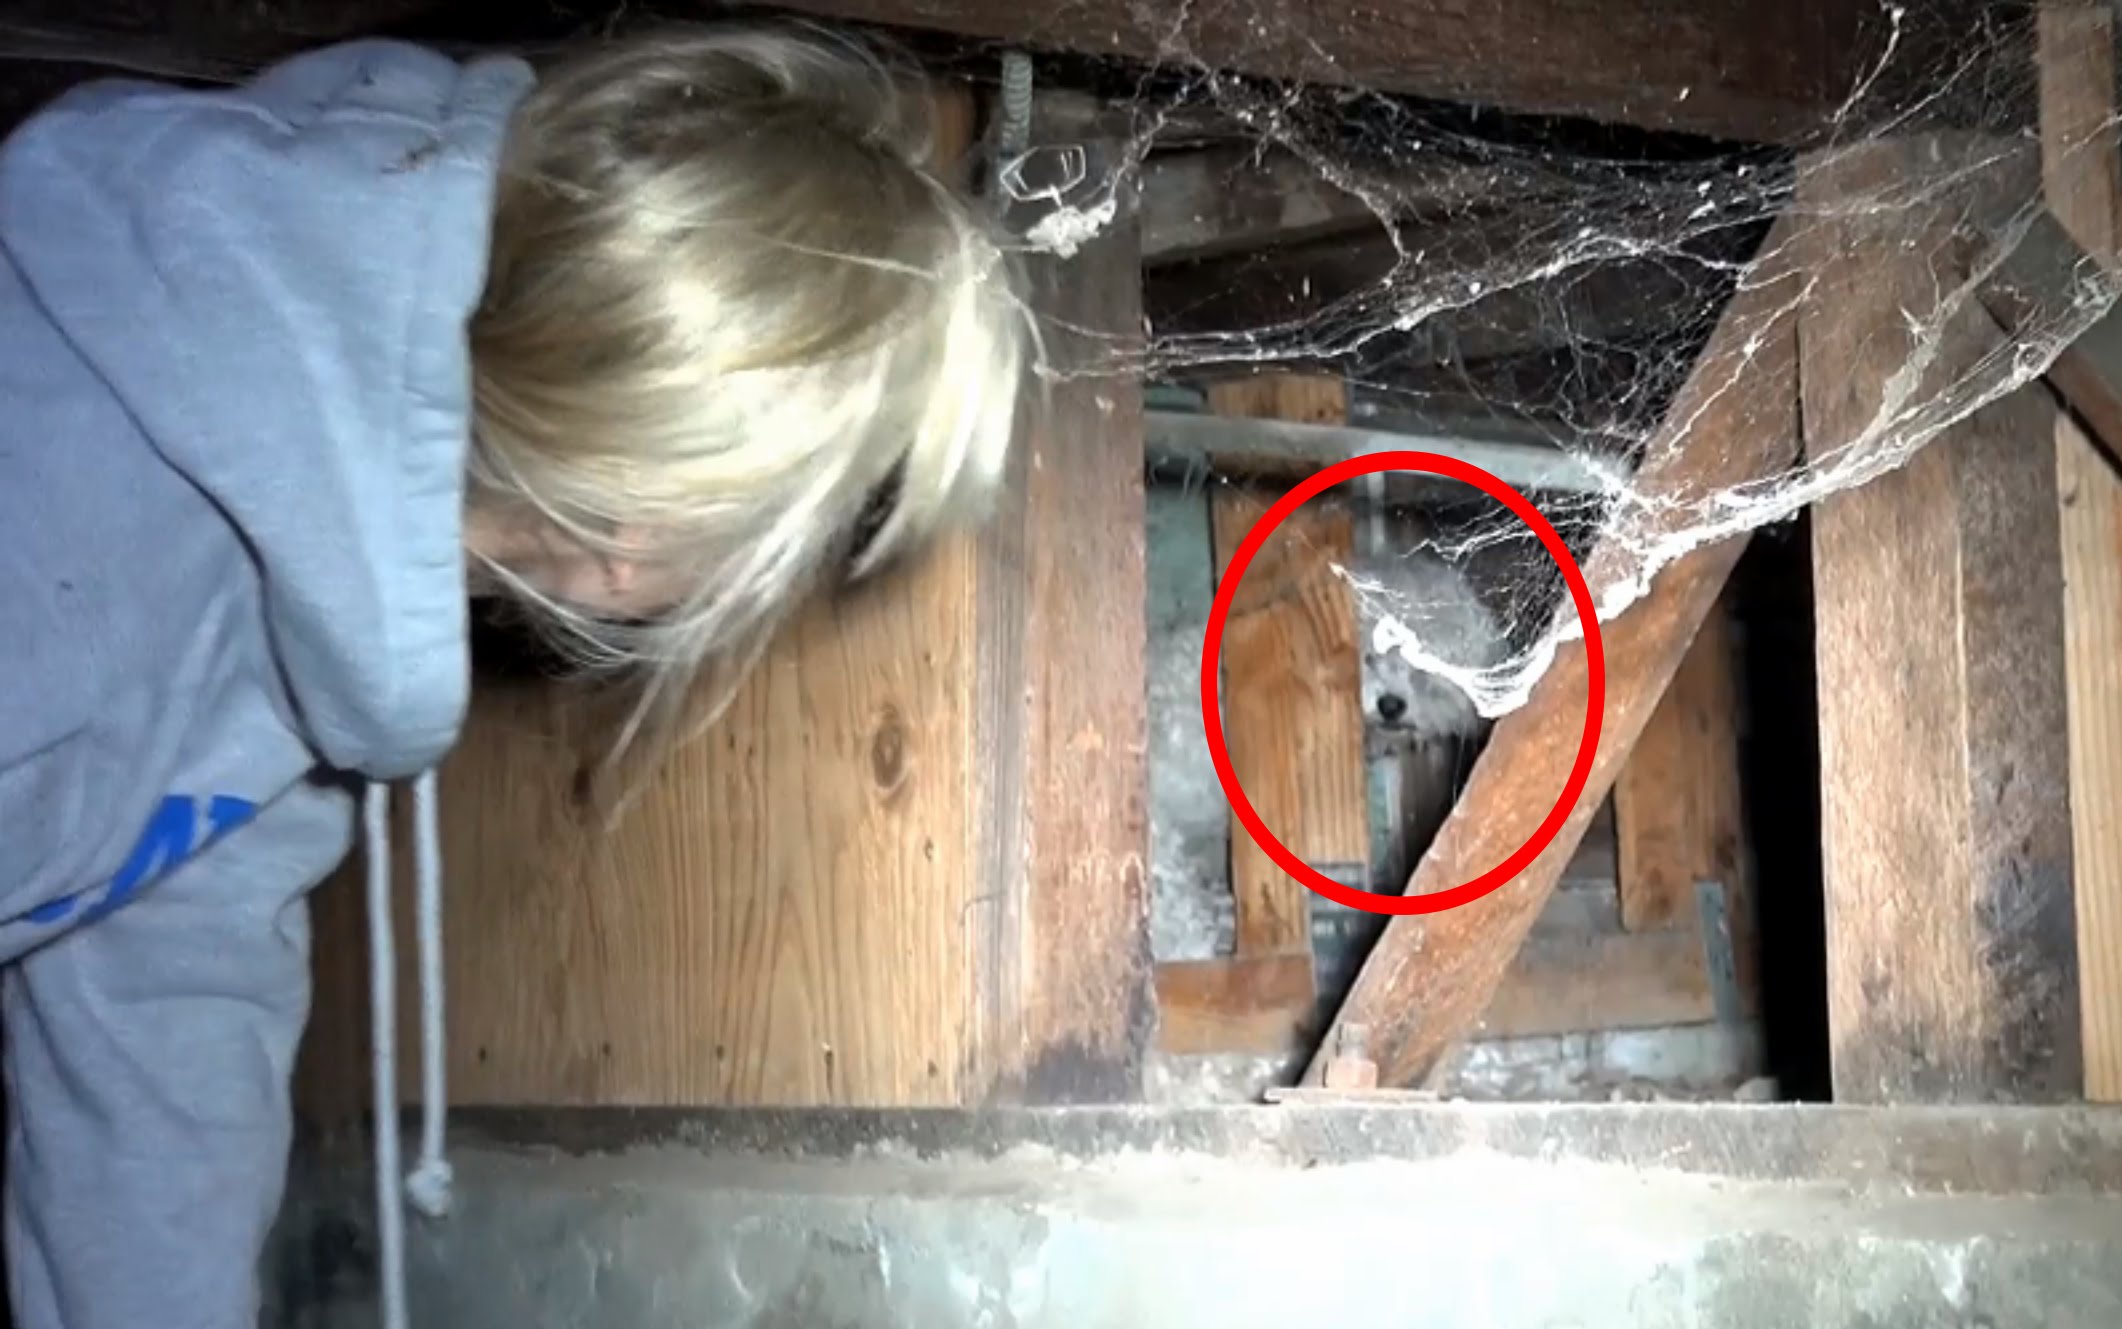 Ils trouvent un chien enfermé dans le sous-sol : le sauvetage va vous tenir en haleine!